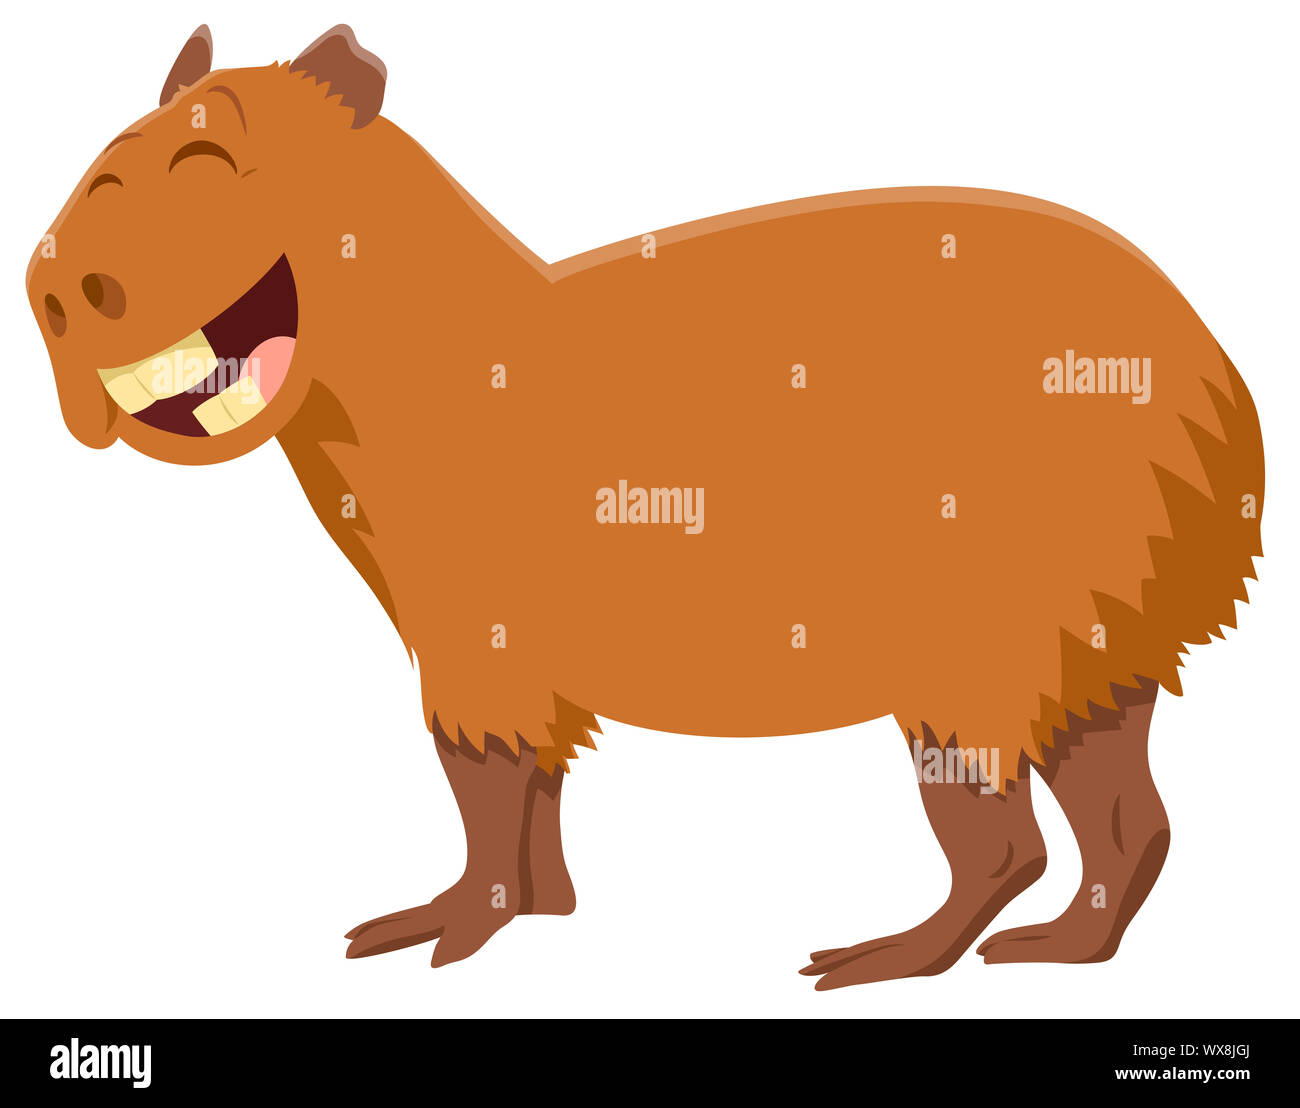 funny capybara cartoon animal character Stock Photo